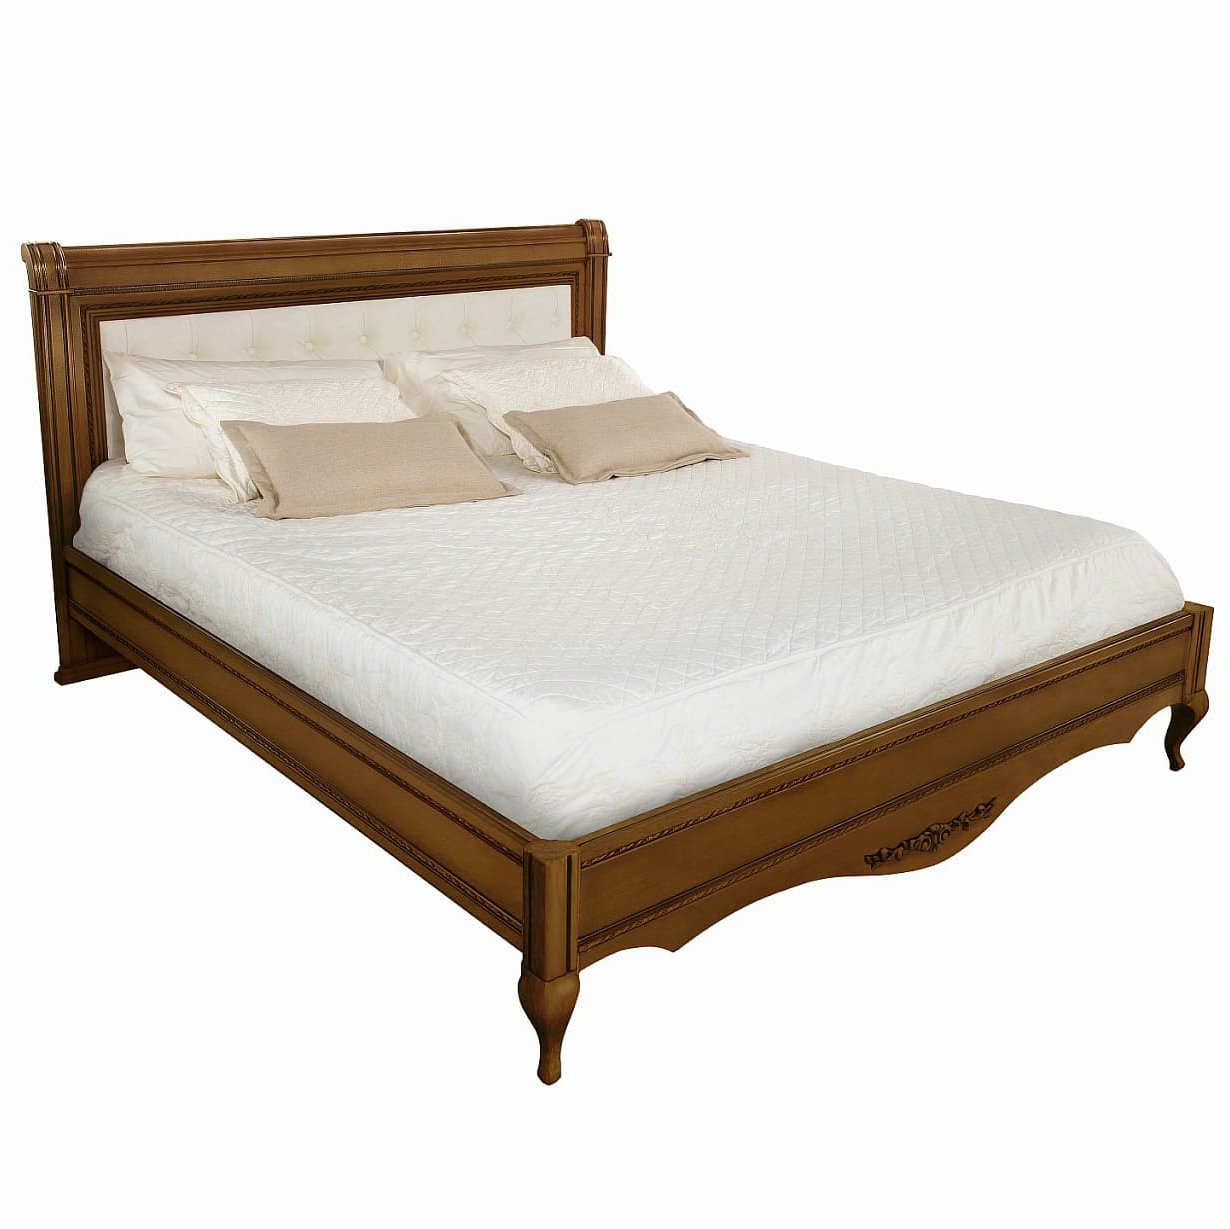 Кровать Timber Неаполь, двуспальная с мягким изголовьем 160x200 см, цвет: орех (Т-520/N)Т-520